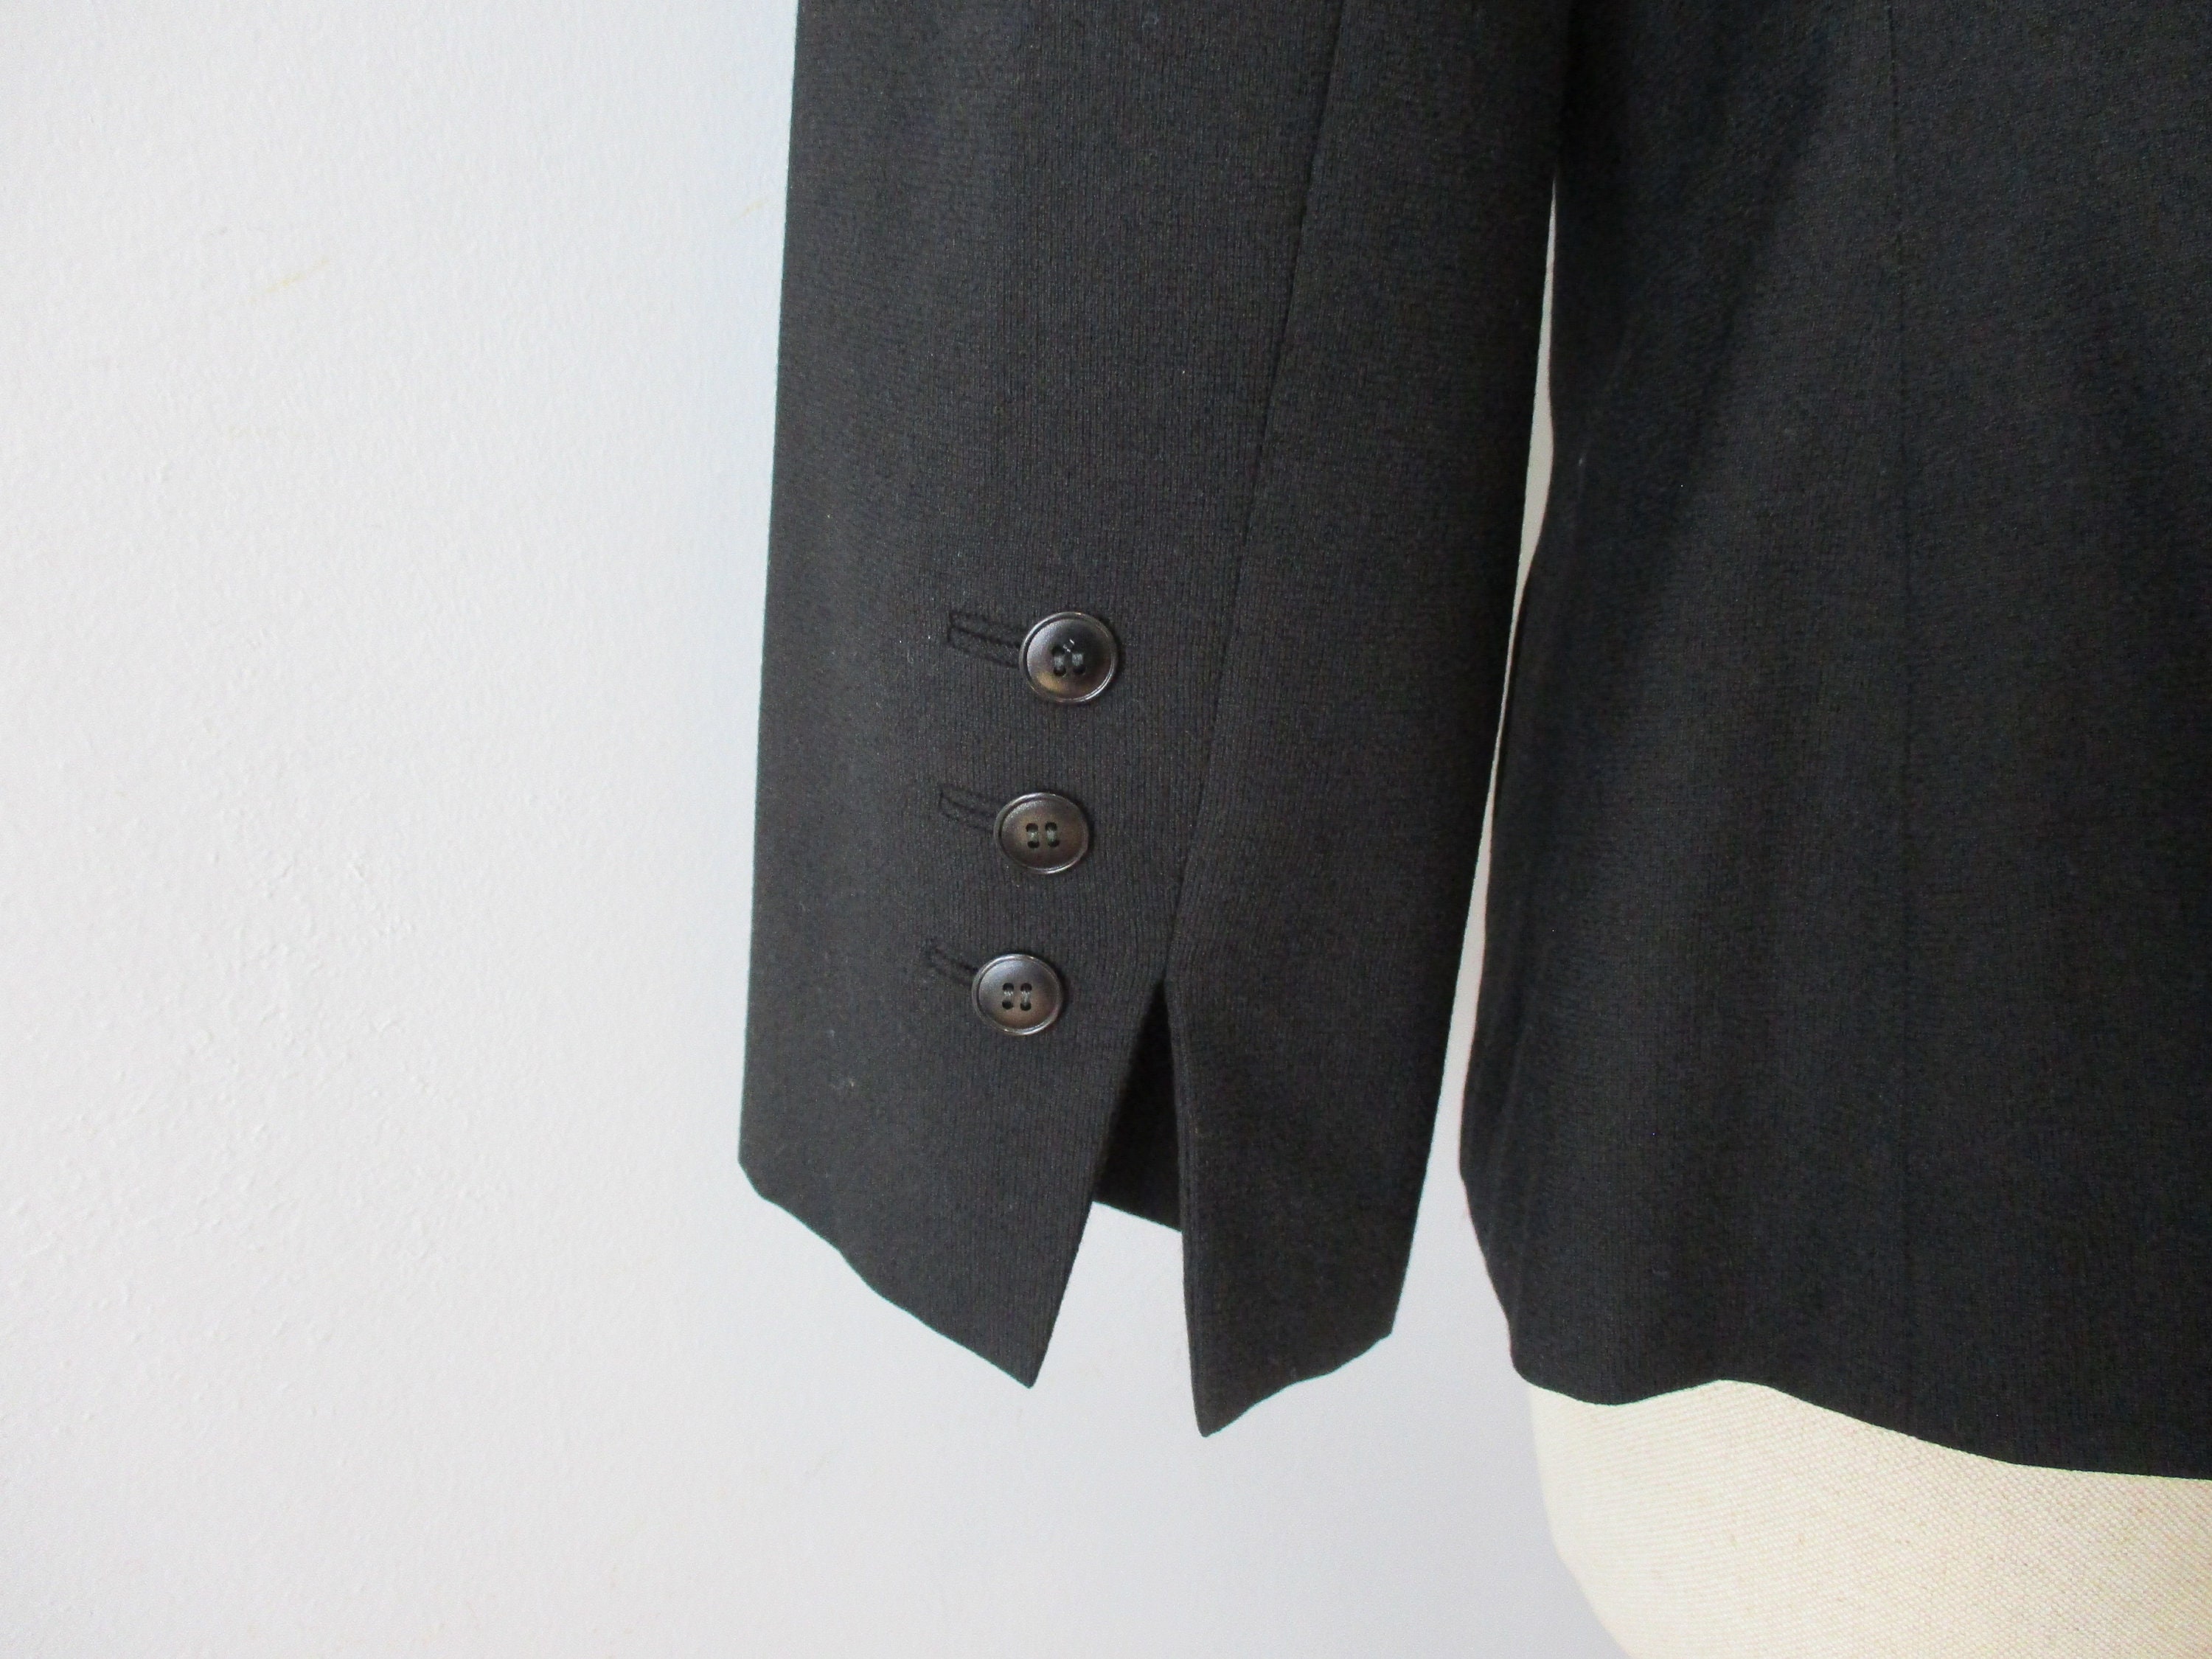 Tuxedo Jacket Blazer Vintage 1940s Black Button Down V Neck | Etsy